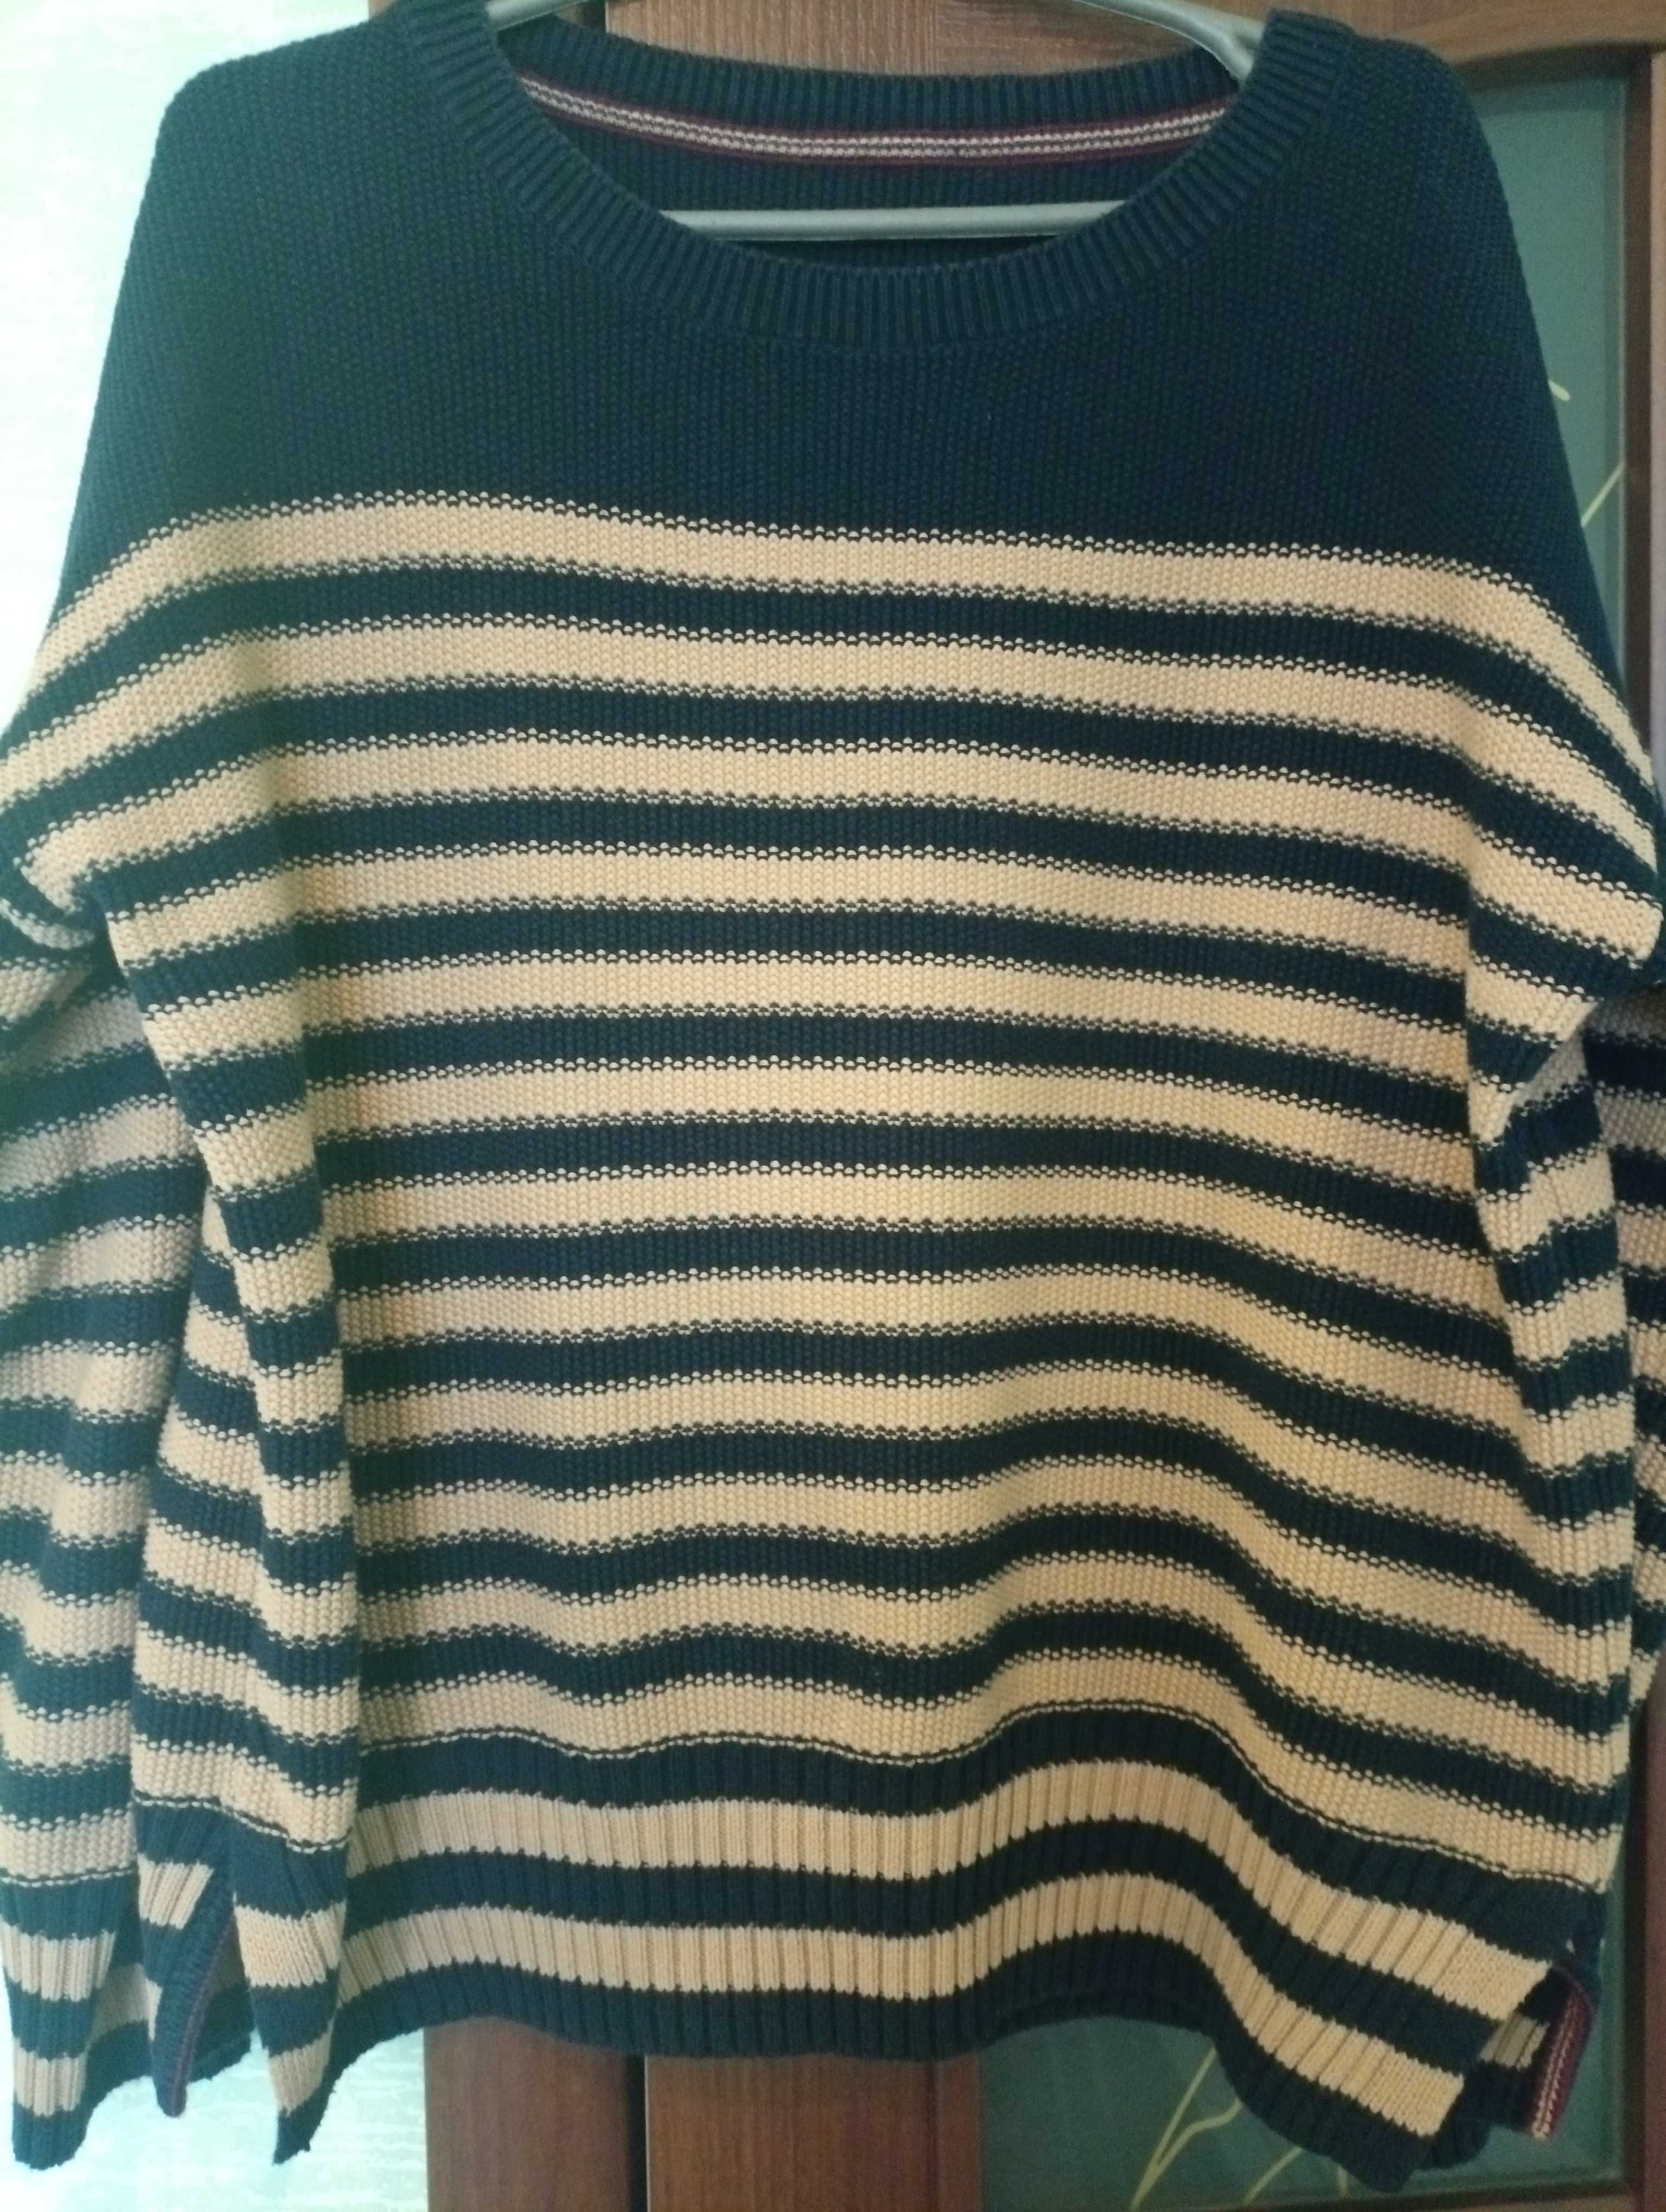 Теплый женский пуловер свитер большого размера, р 54-56